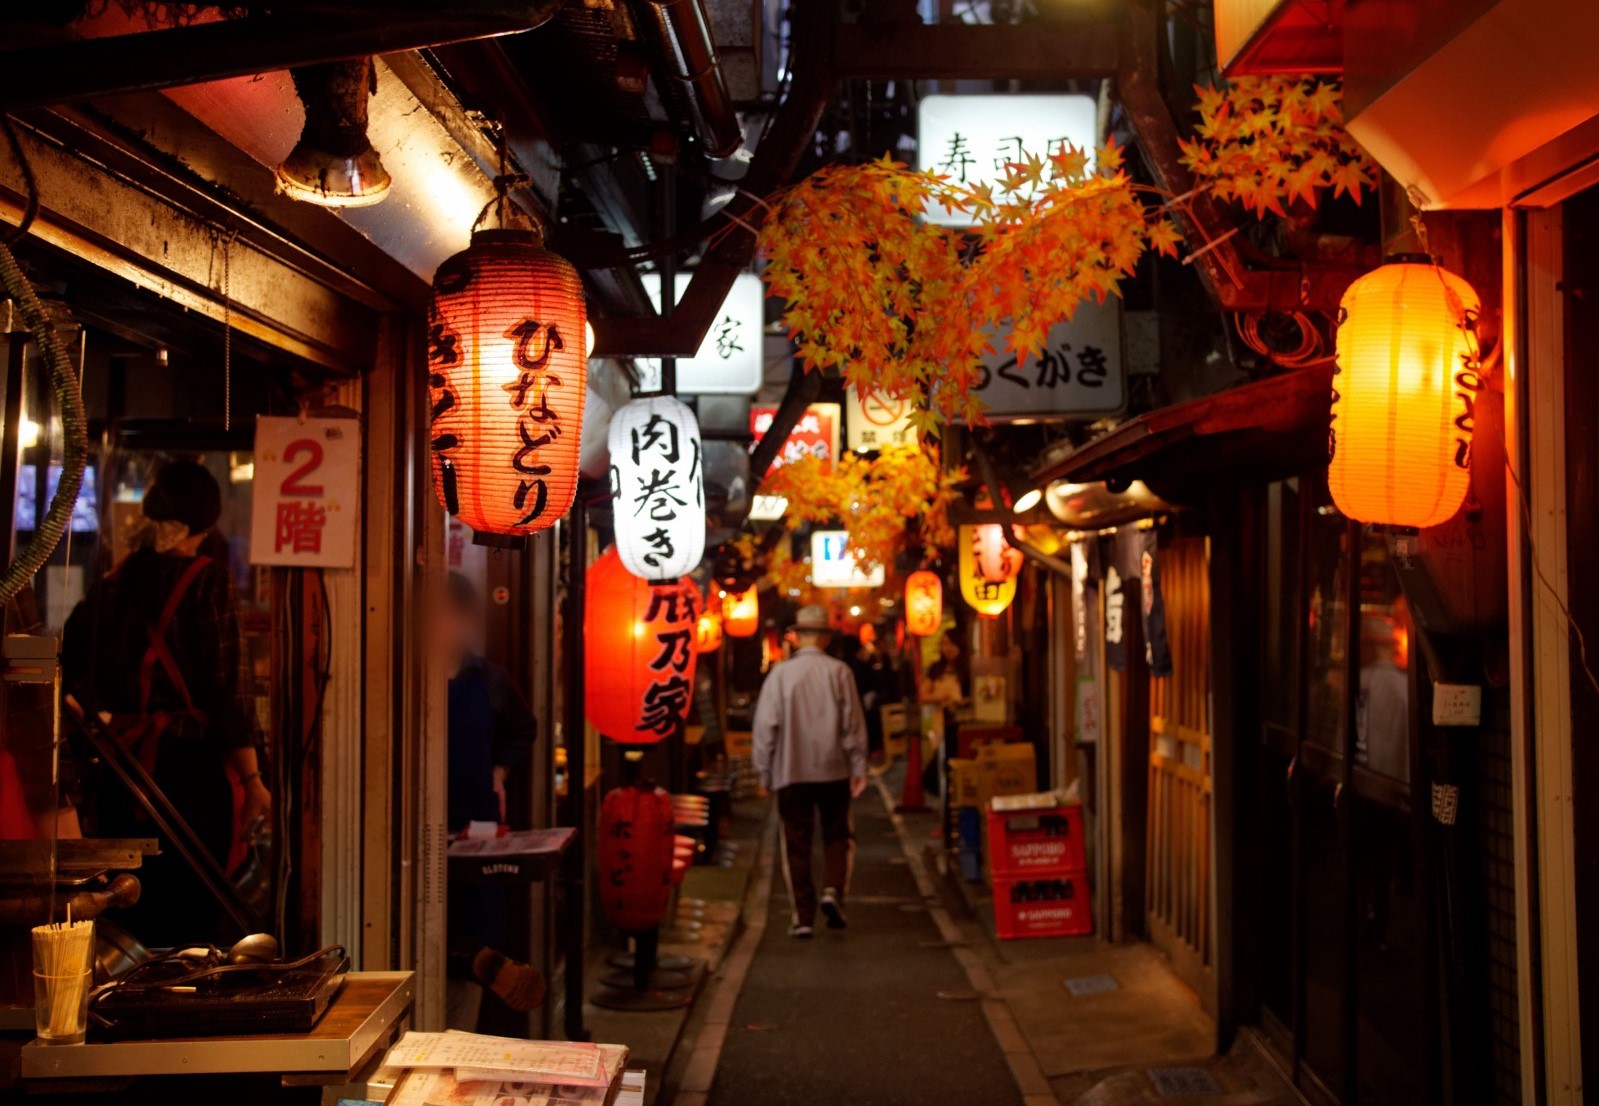 Traditional Japanese style Izakaya Alley